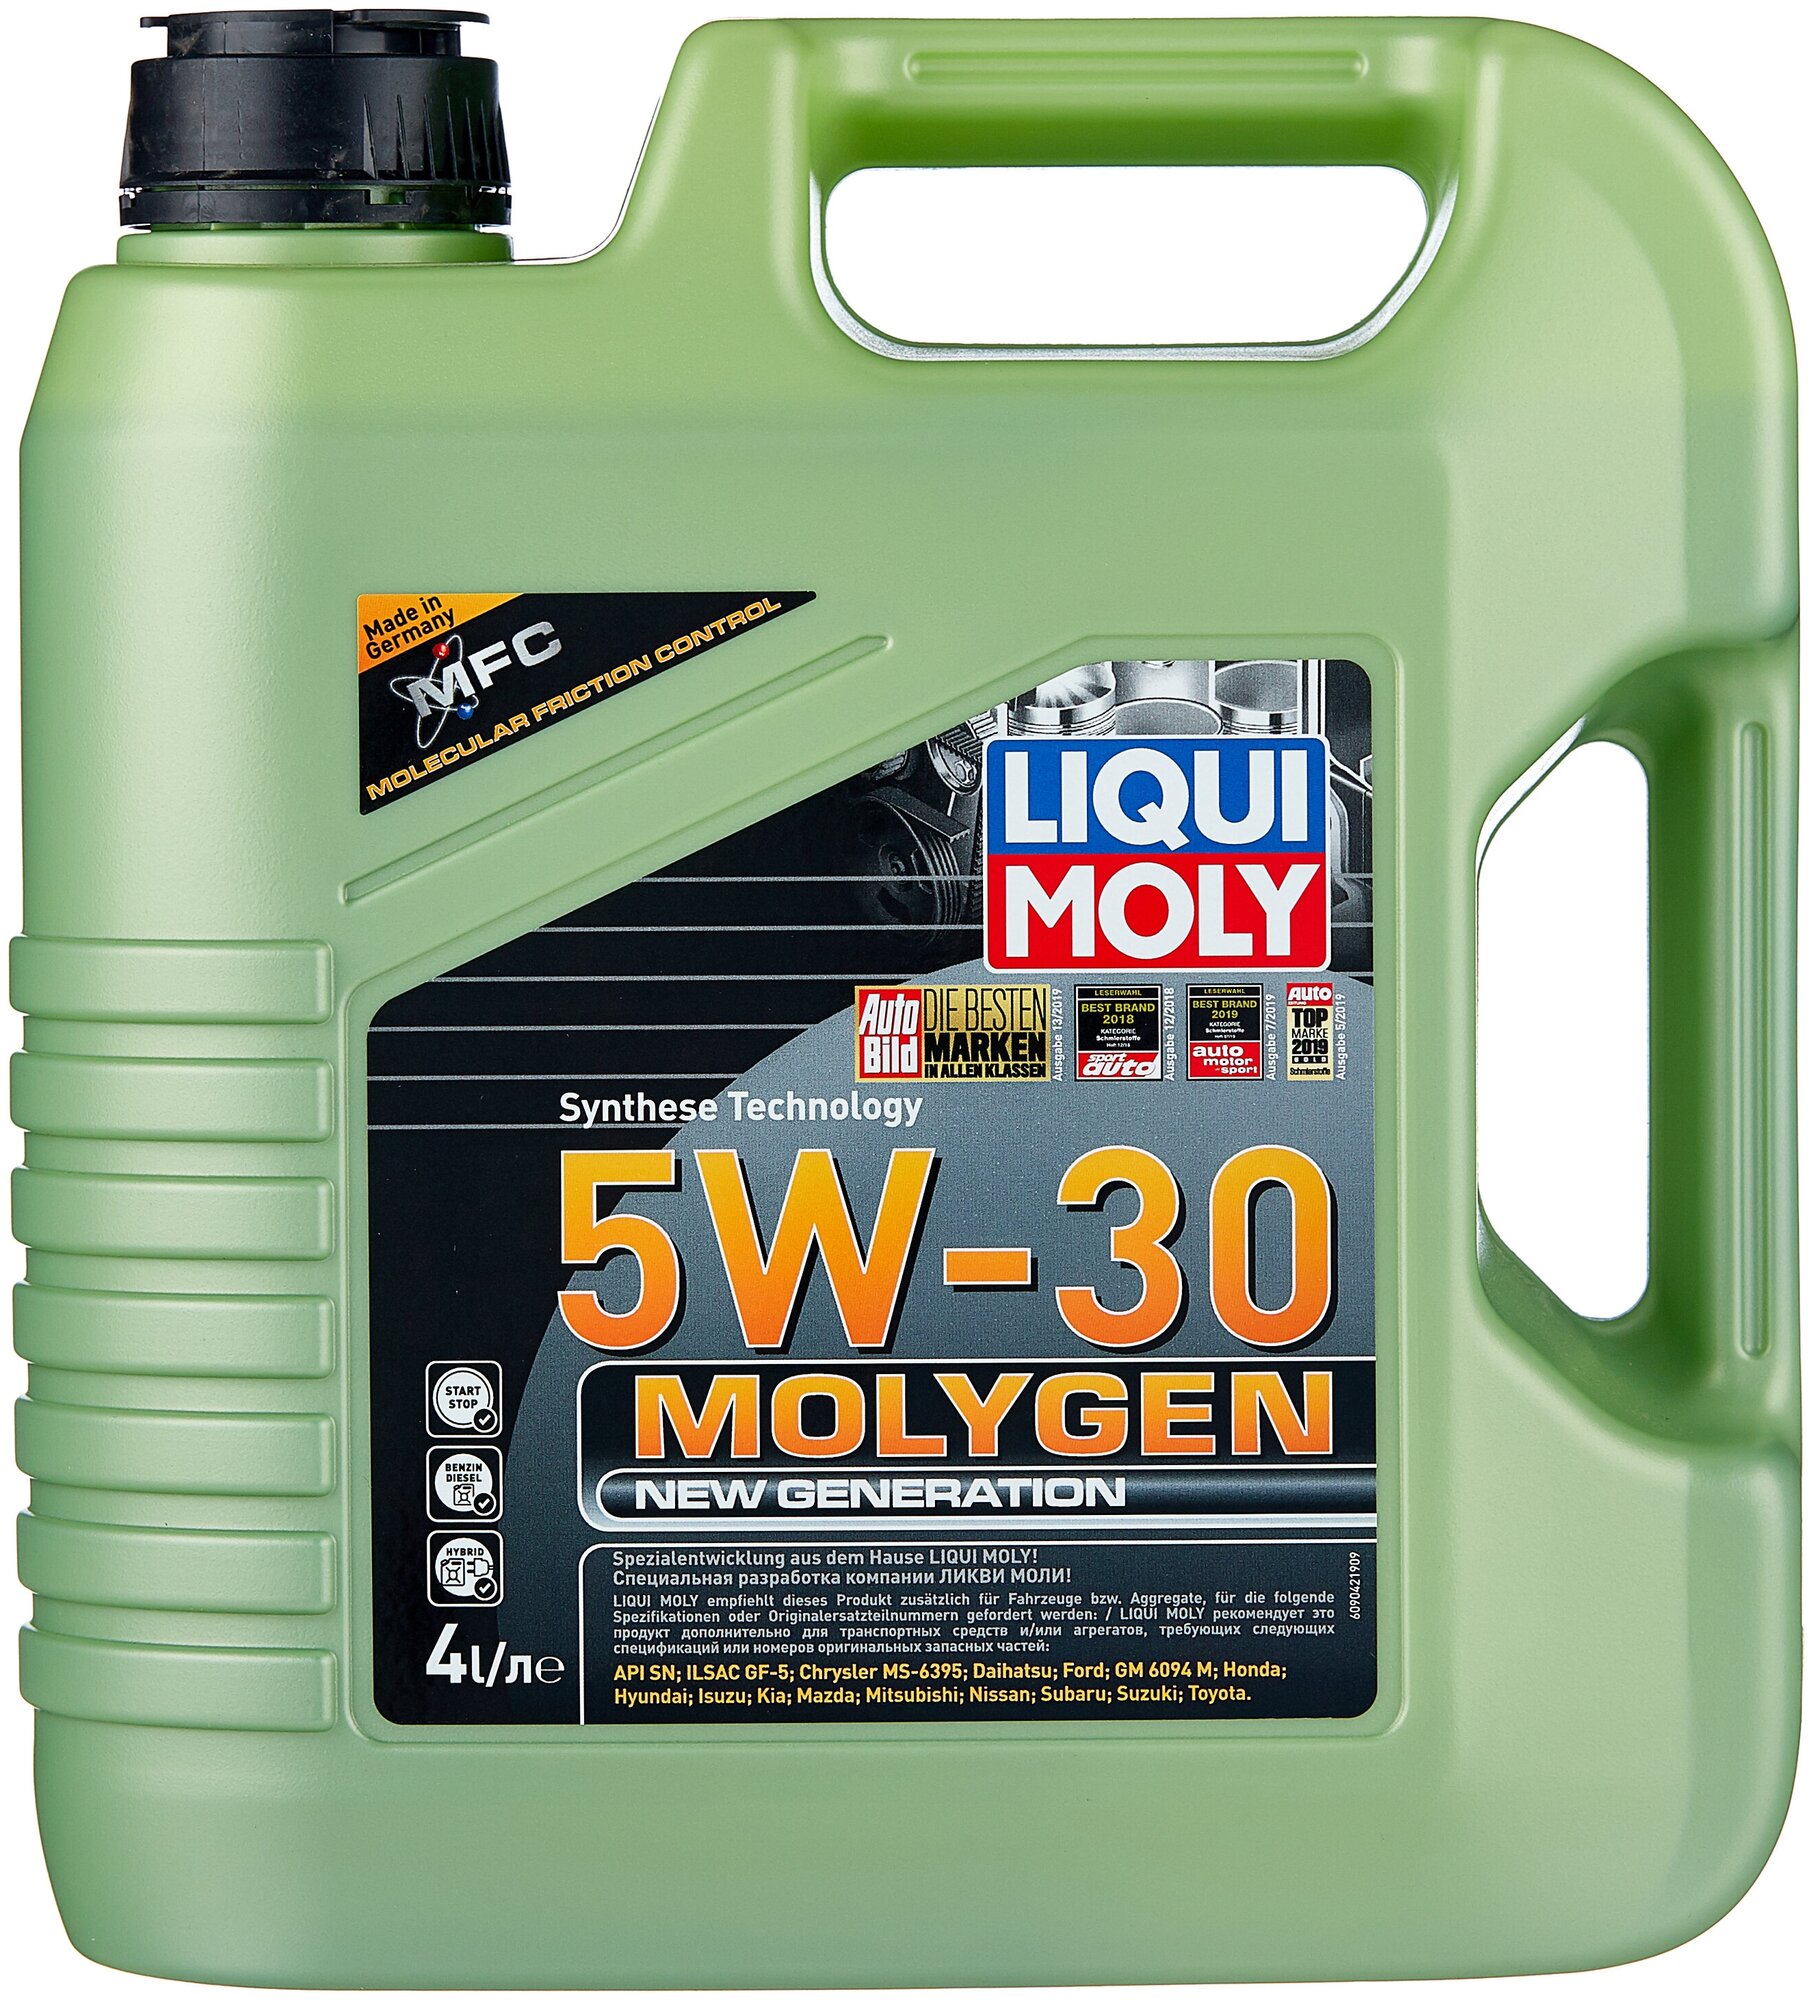    LIQUI MOLY Molygen New Generation 5W-30, 4 